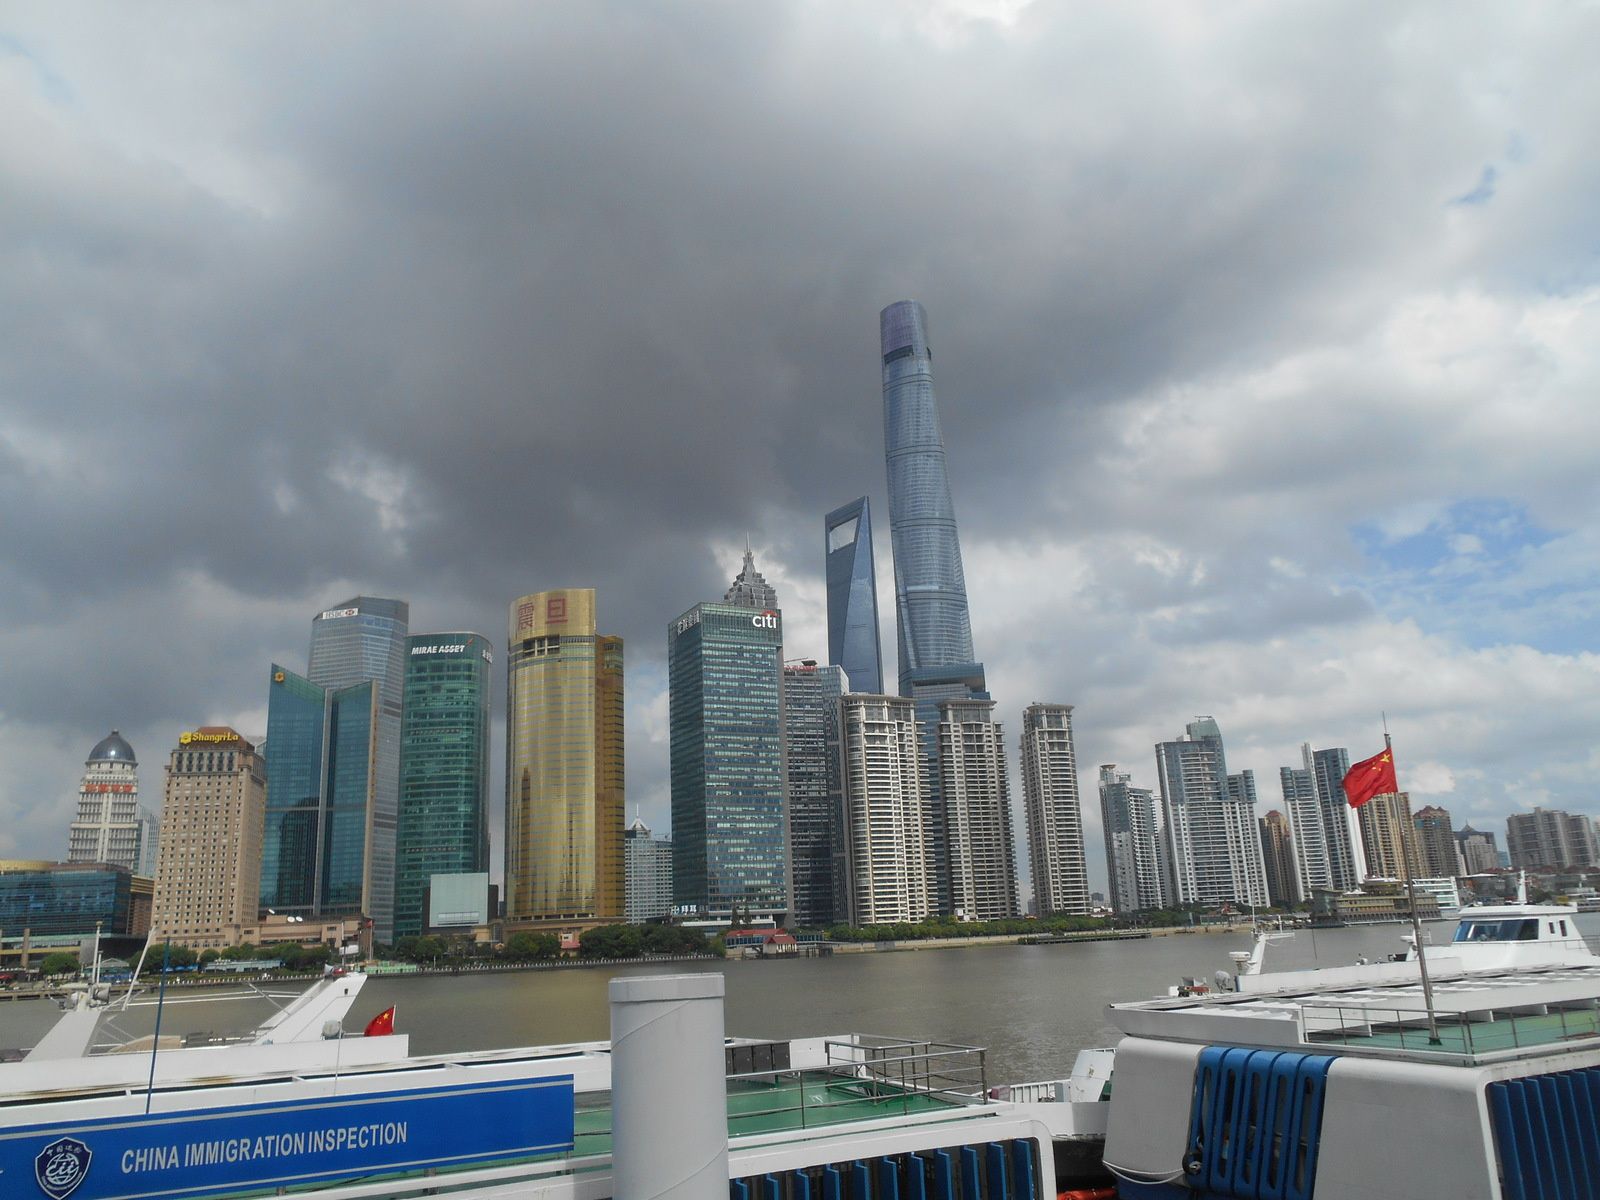 De part et d'autre du fleuve Huangpu, les quartiers du Bund et Pudong, face à face.